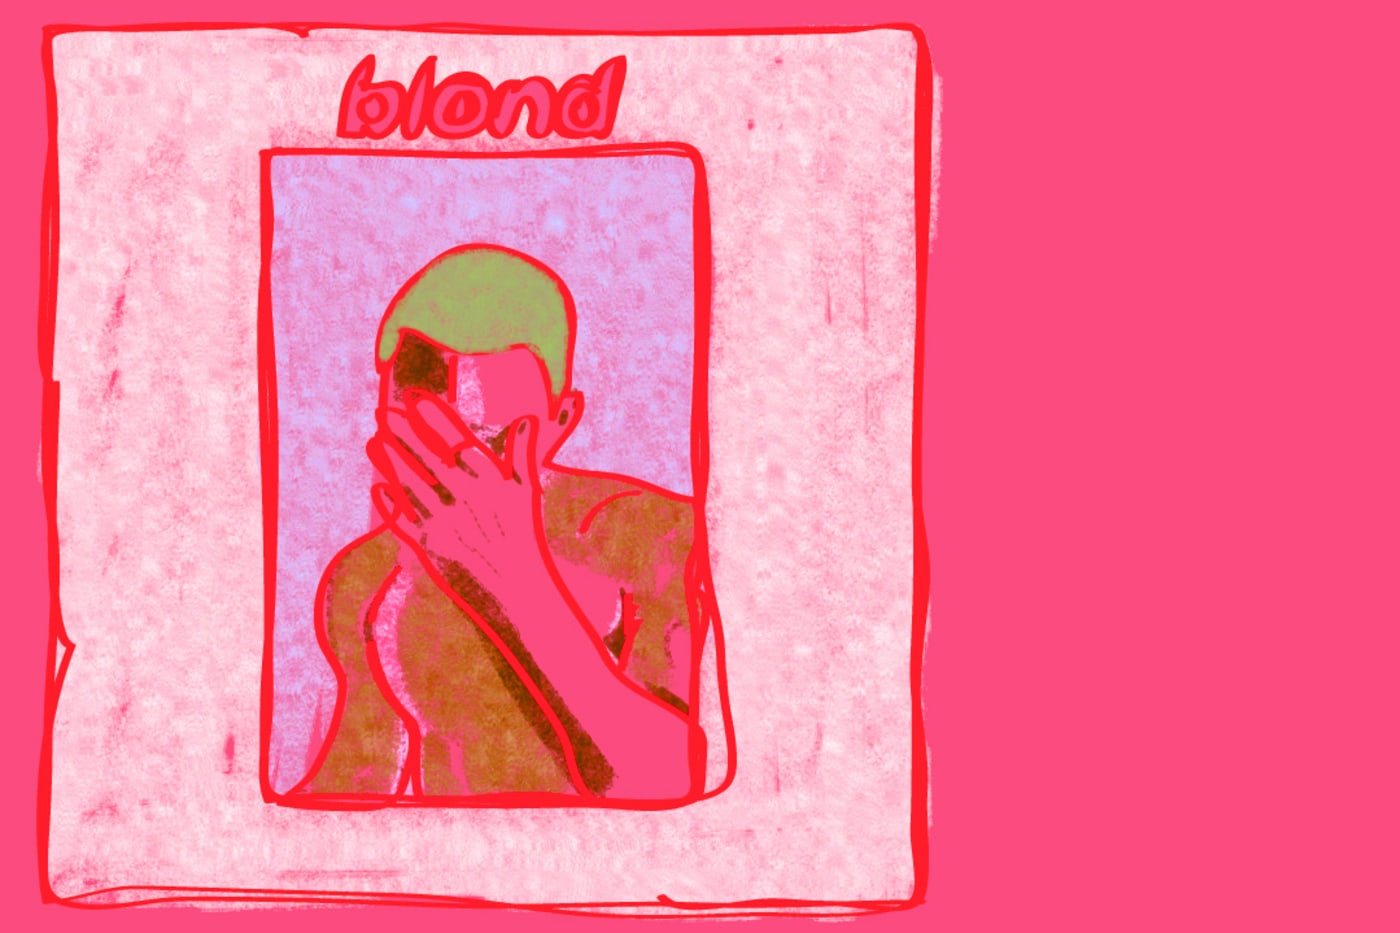 6. "Blonde" by Frank Ocean - wide 5